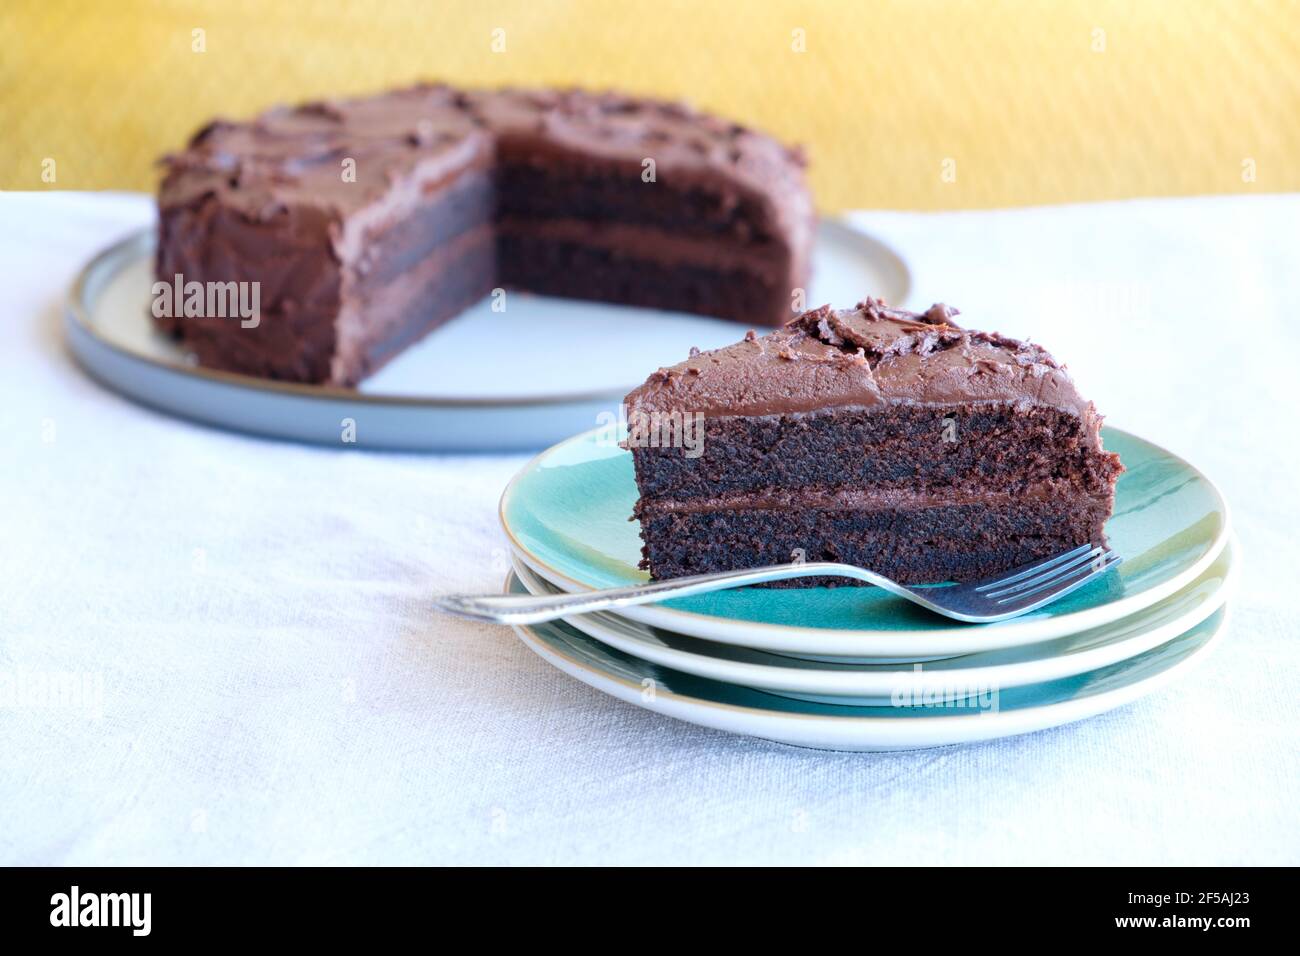 Une tranche ou une portion de gâteau au chocolat riche et humide fait maison sur une assiette. La tranche de gâteau a une garniture de crème au chocolat et une épaisse garniture au chocolat Banque D'Images